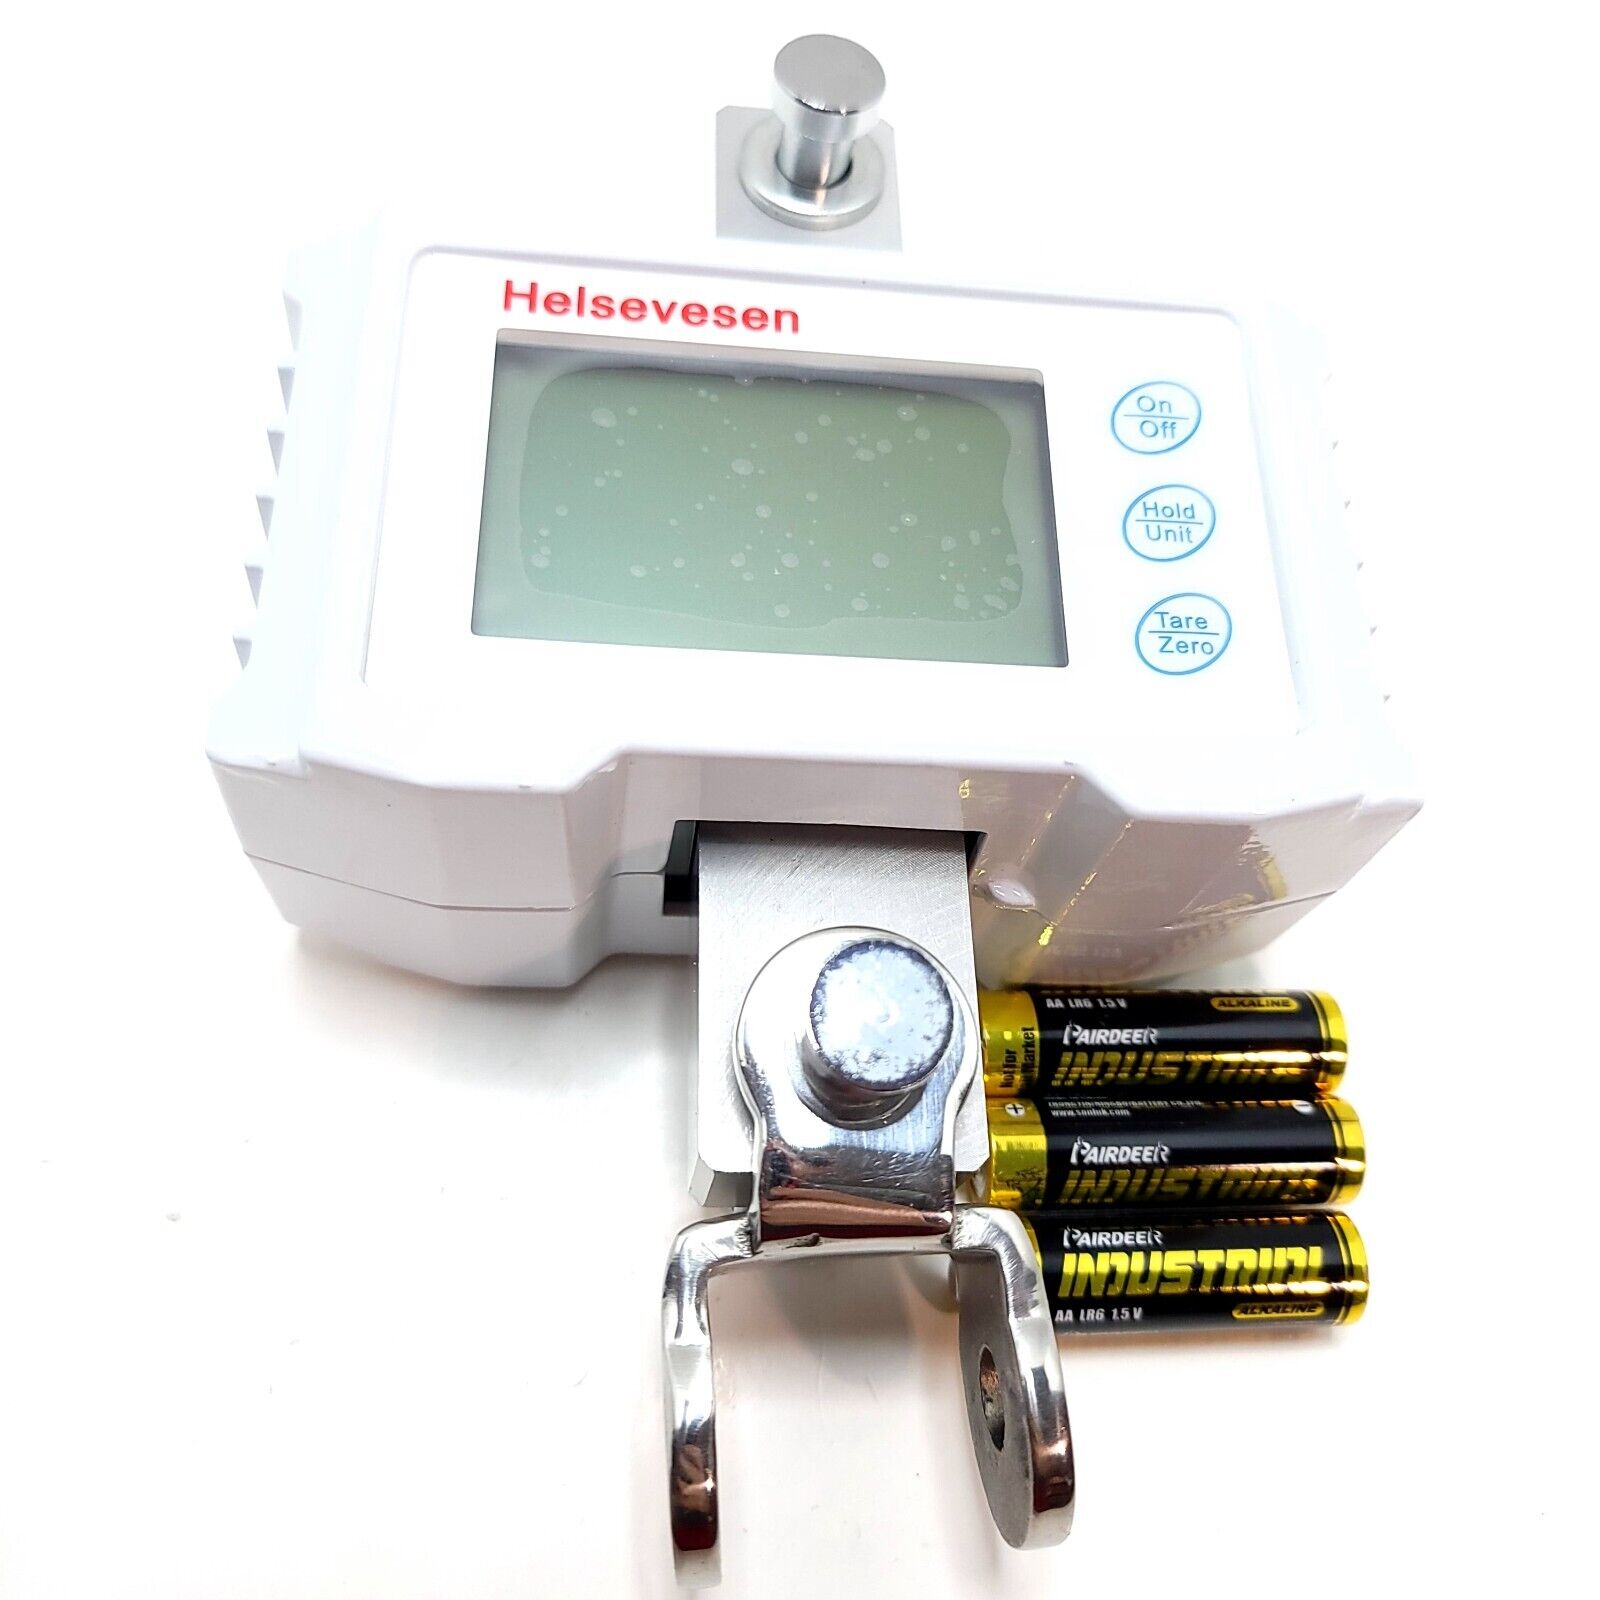 Helsevesen Patient Lift Scale Pls 300 Patient Digital Lift Scale With Batteries